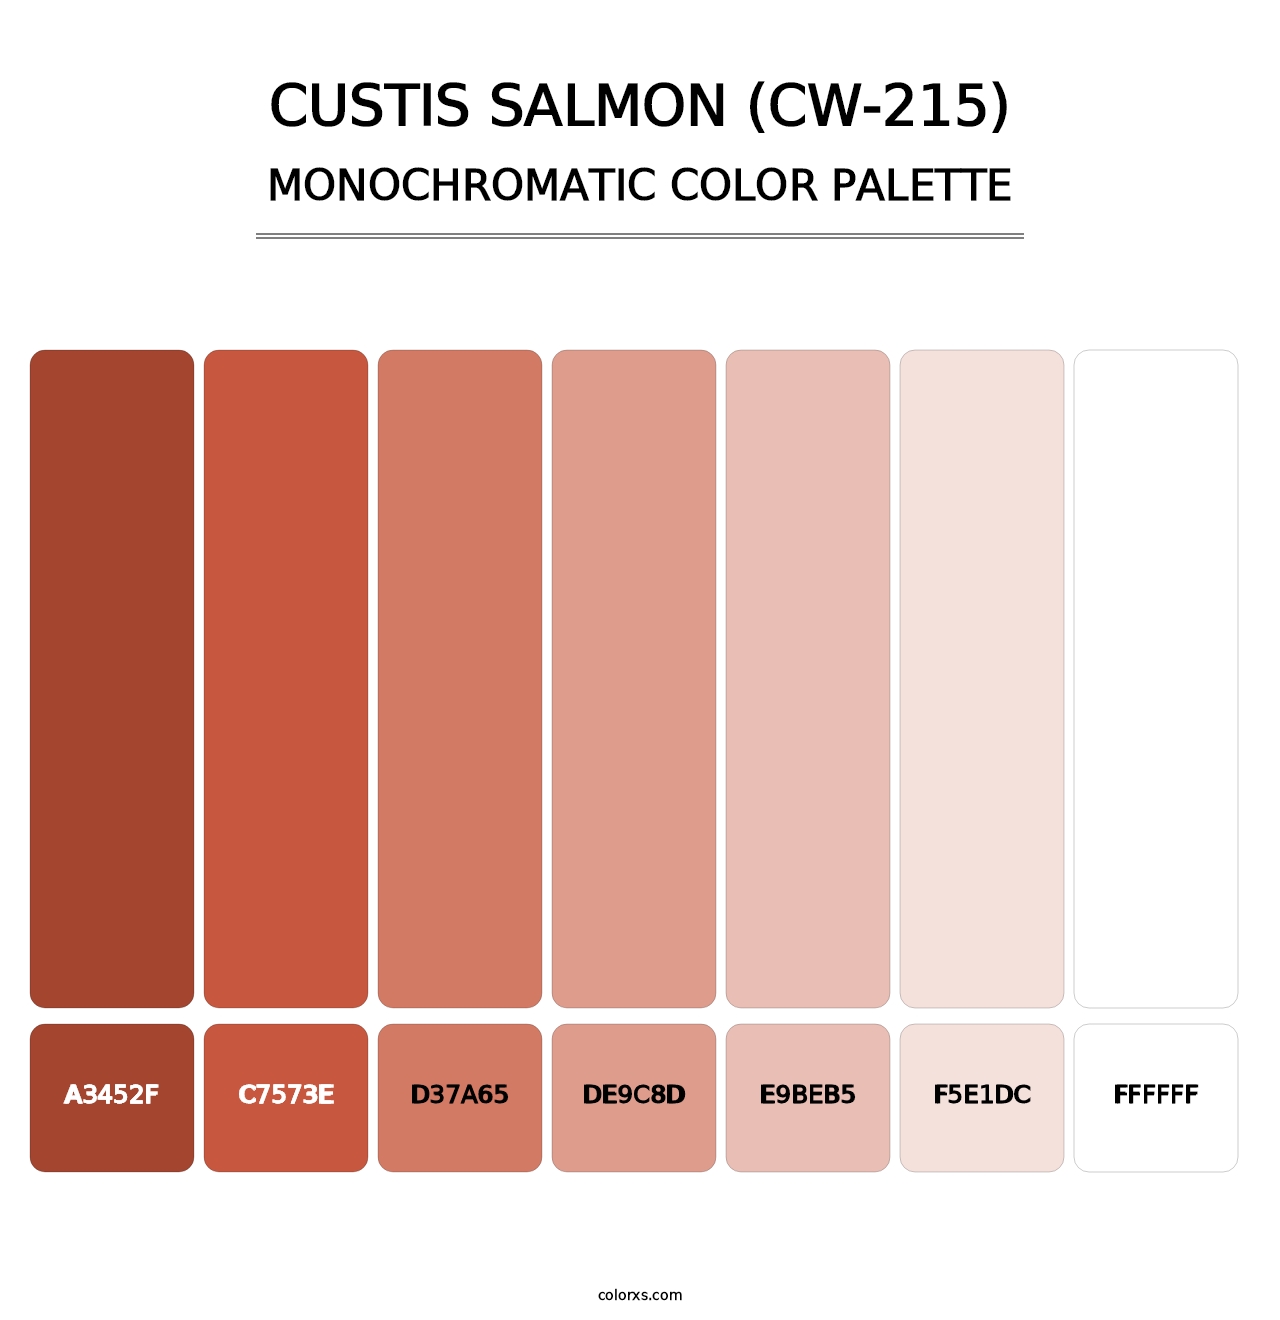 Custis Salmon (CW-215) - Monochromatic Color Palette